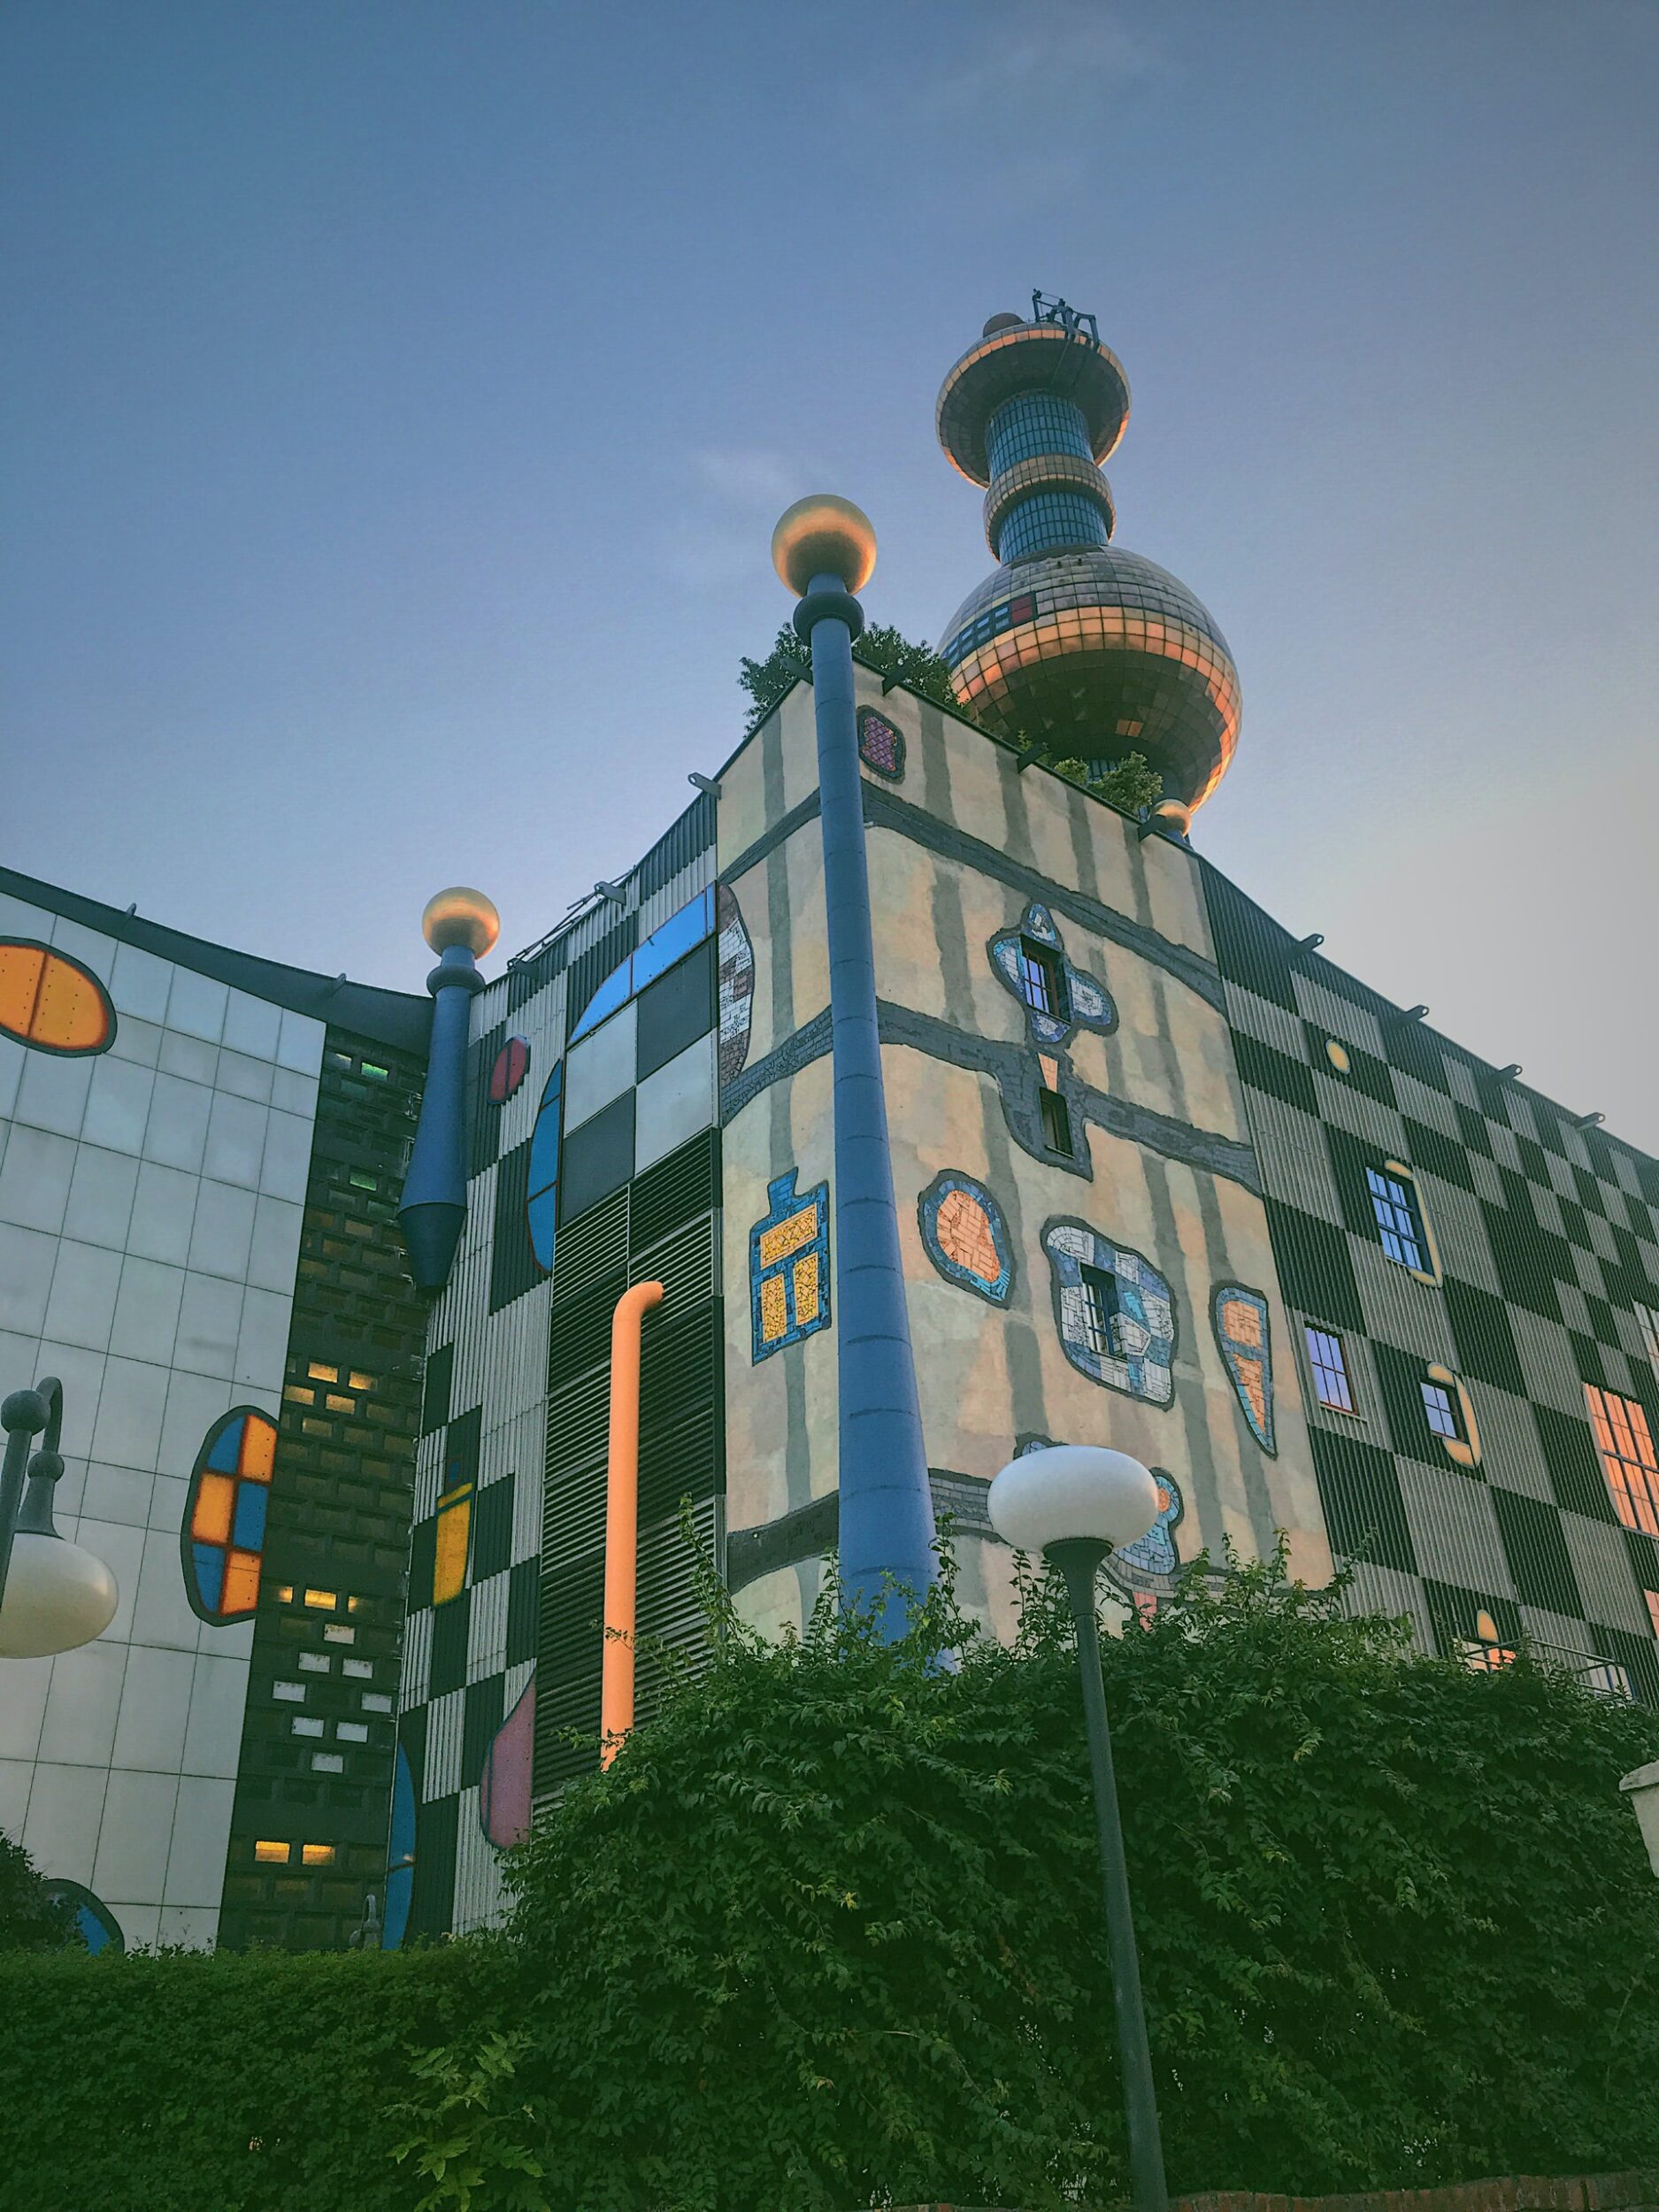 A Hundertwasser designed building in Vienna